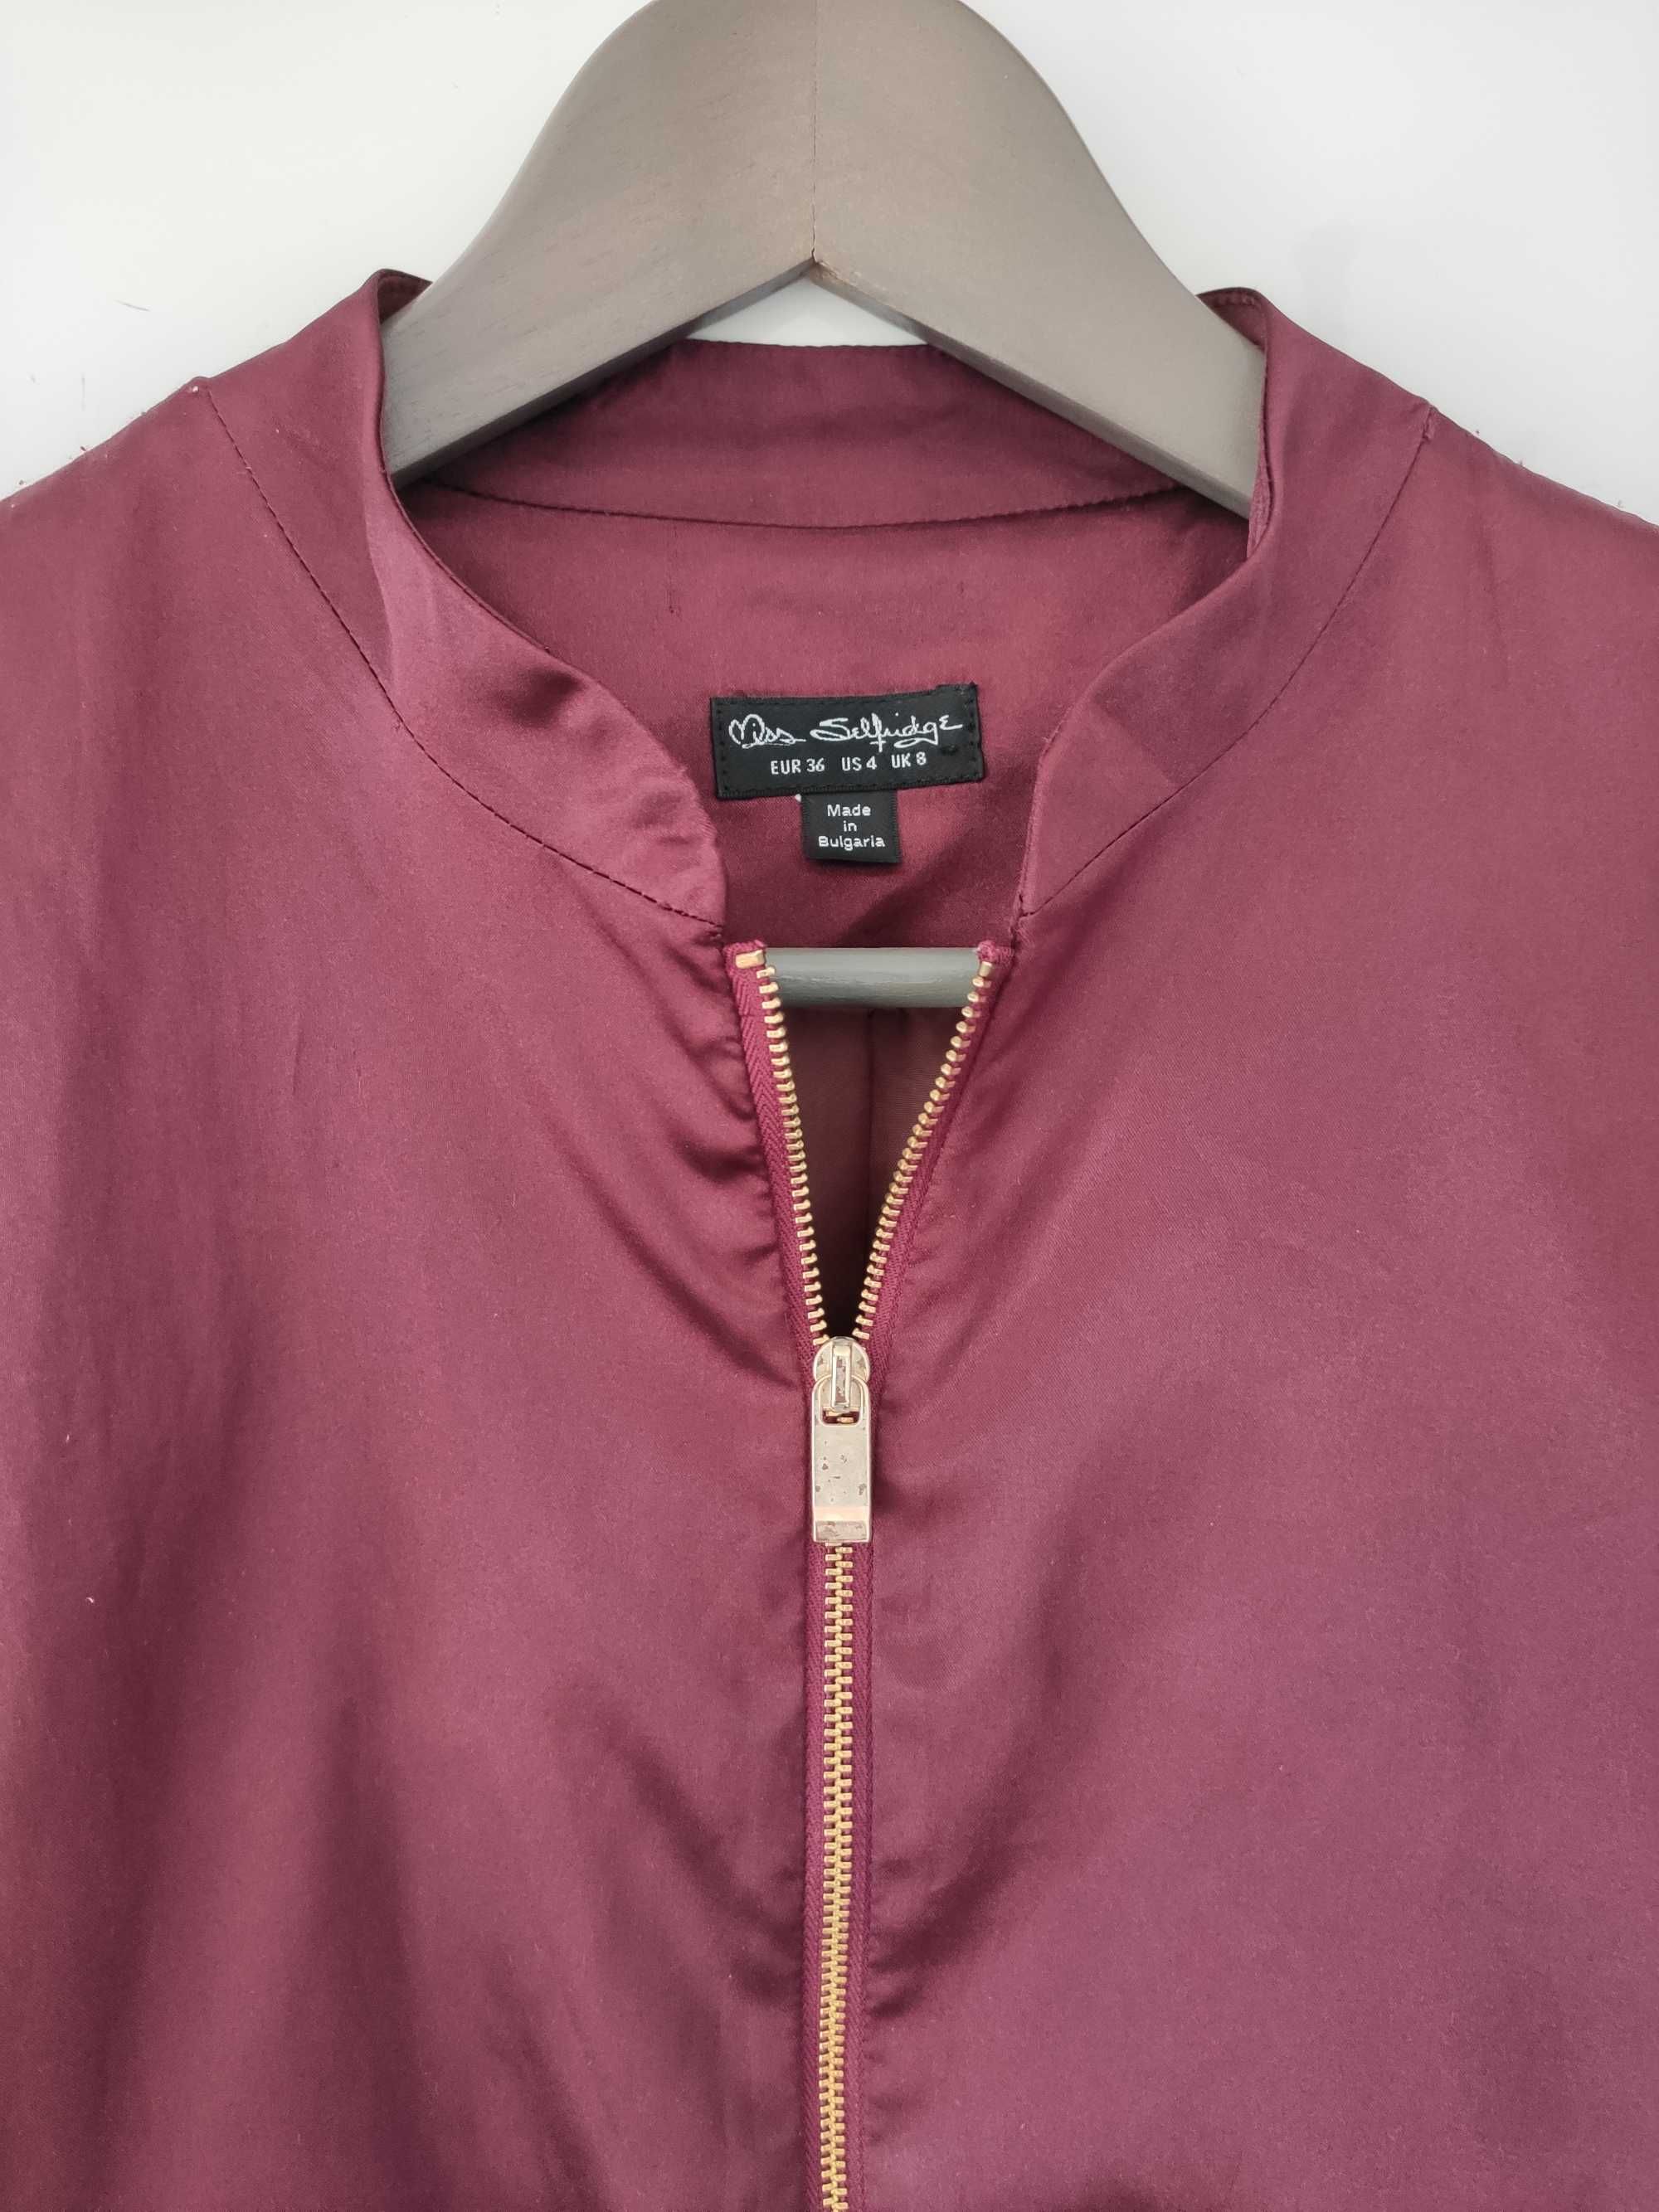 Burgundowy bluza kurtka bomberka Miss Selfridge rozmiar 36